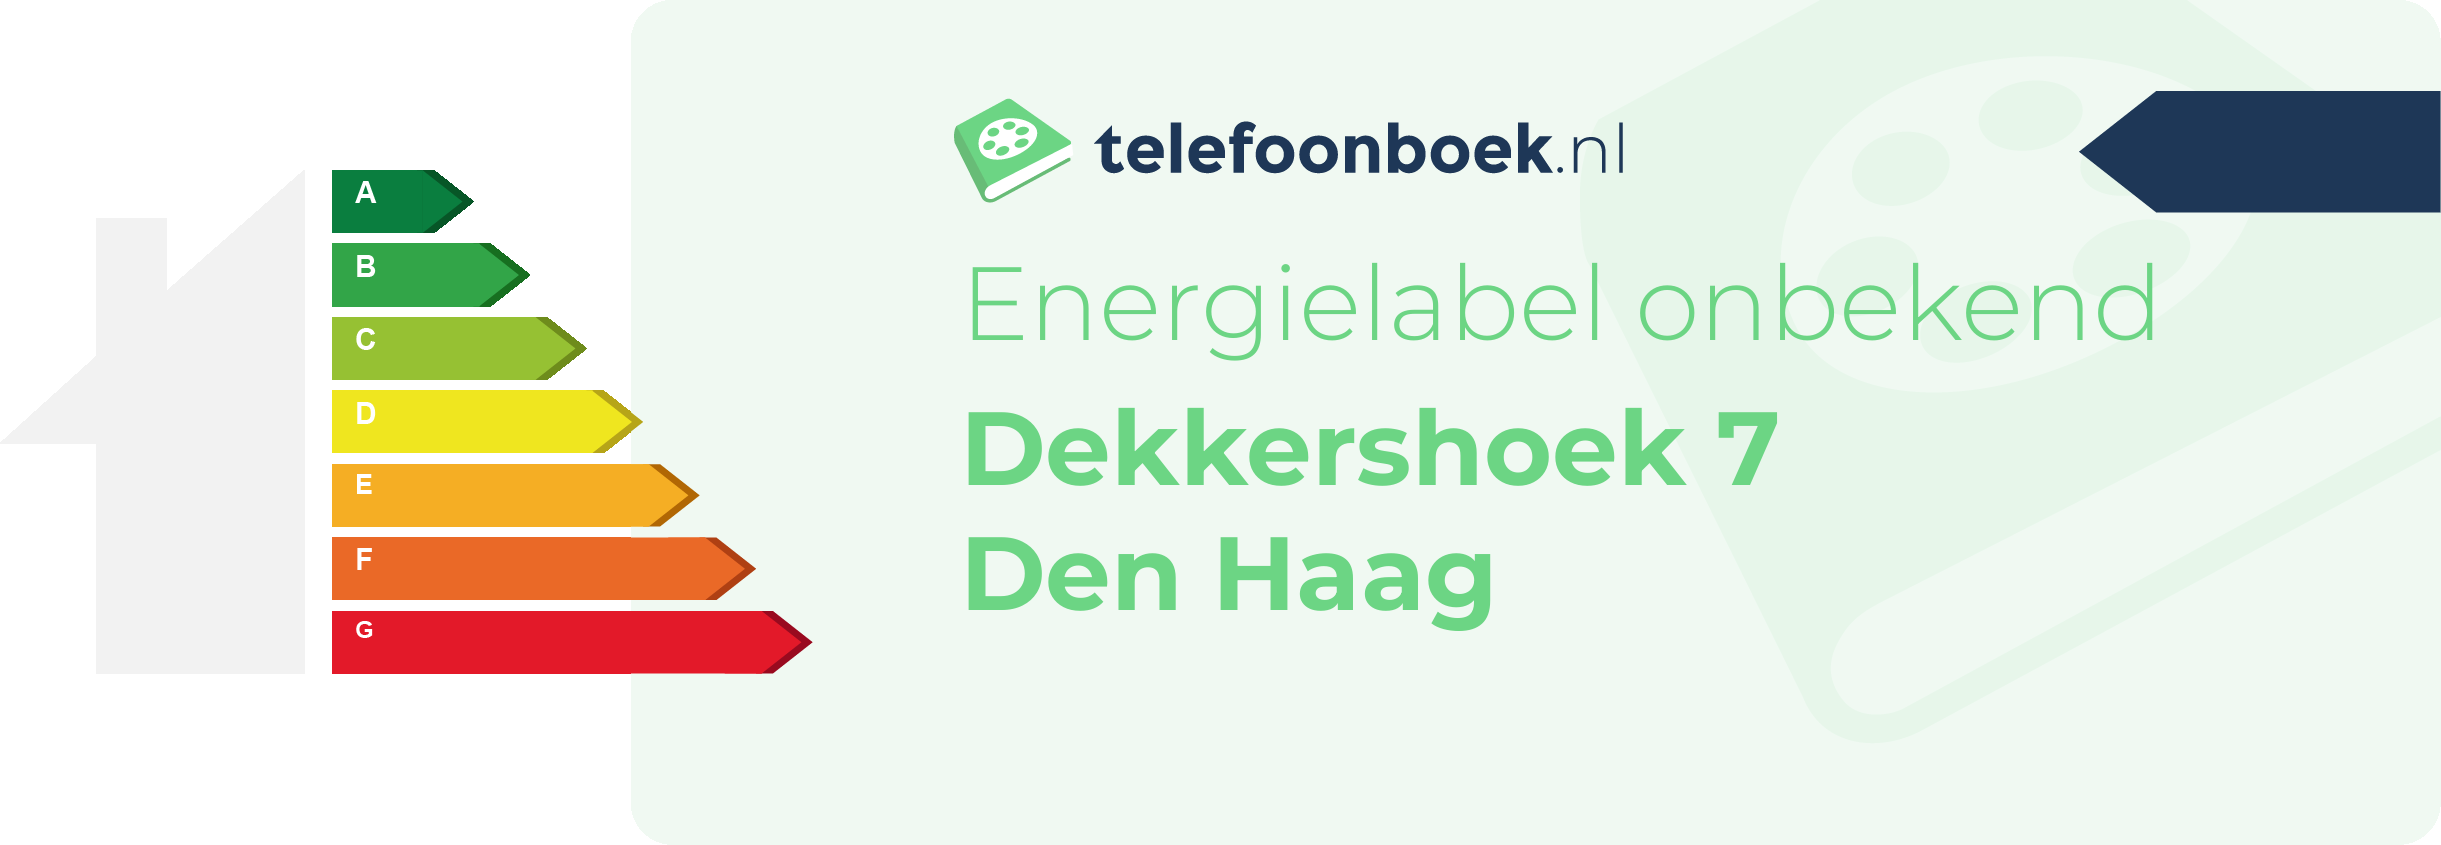 Energielabel Dekkershoek 7 Den Haag